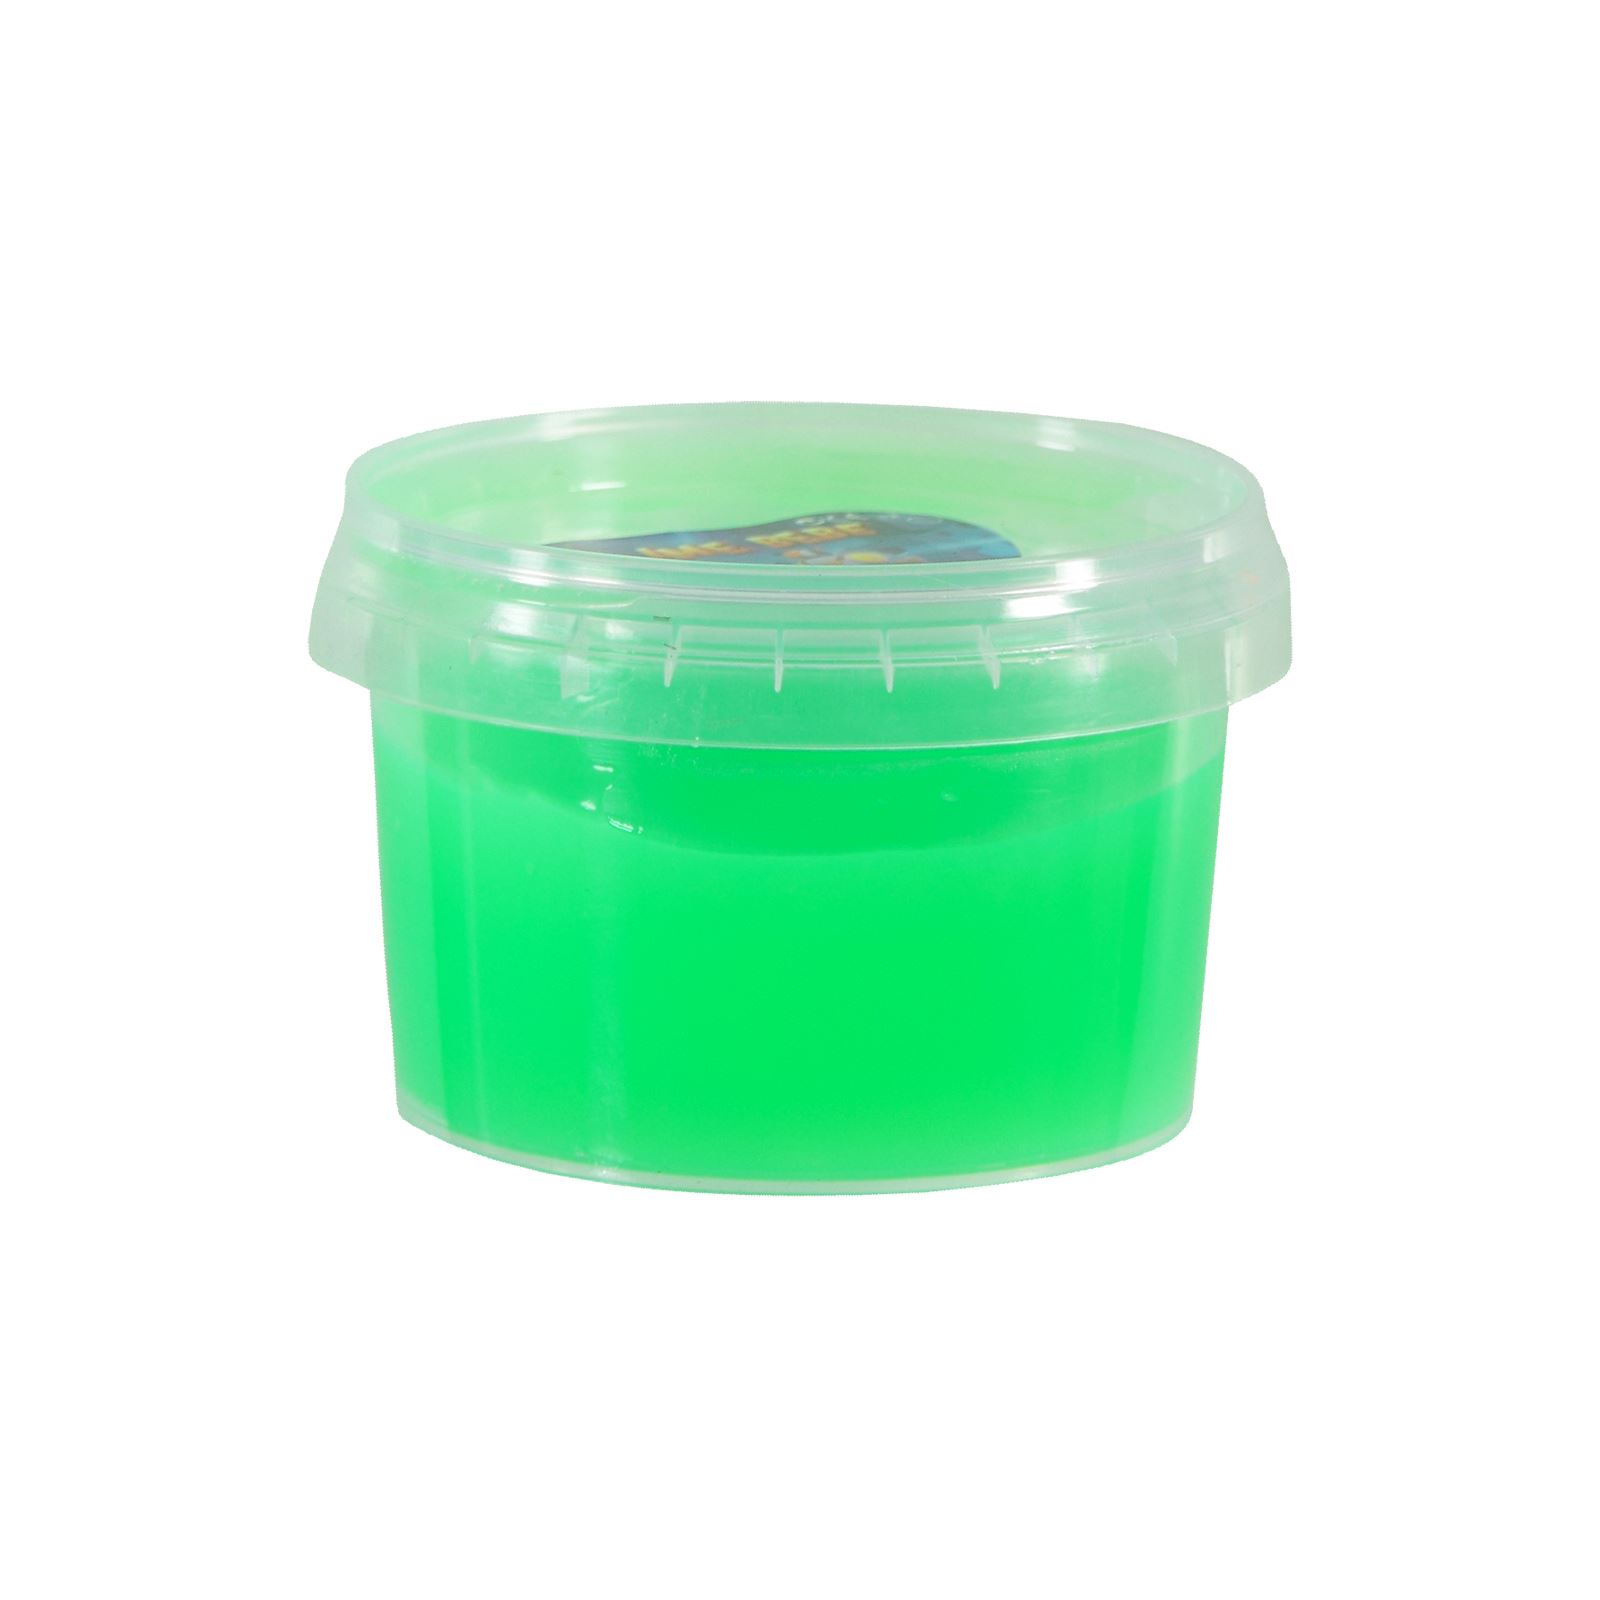 Duka Toys Yuvarlak Ufo Fosforlu Slime Oyun Hamuru 160 gr Neon Yeşil